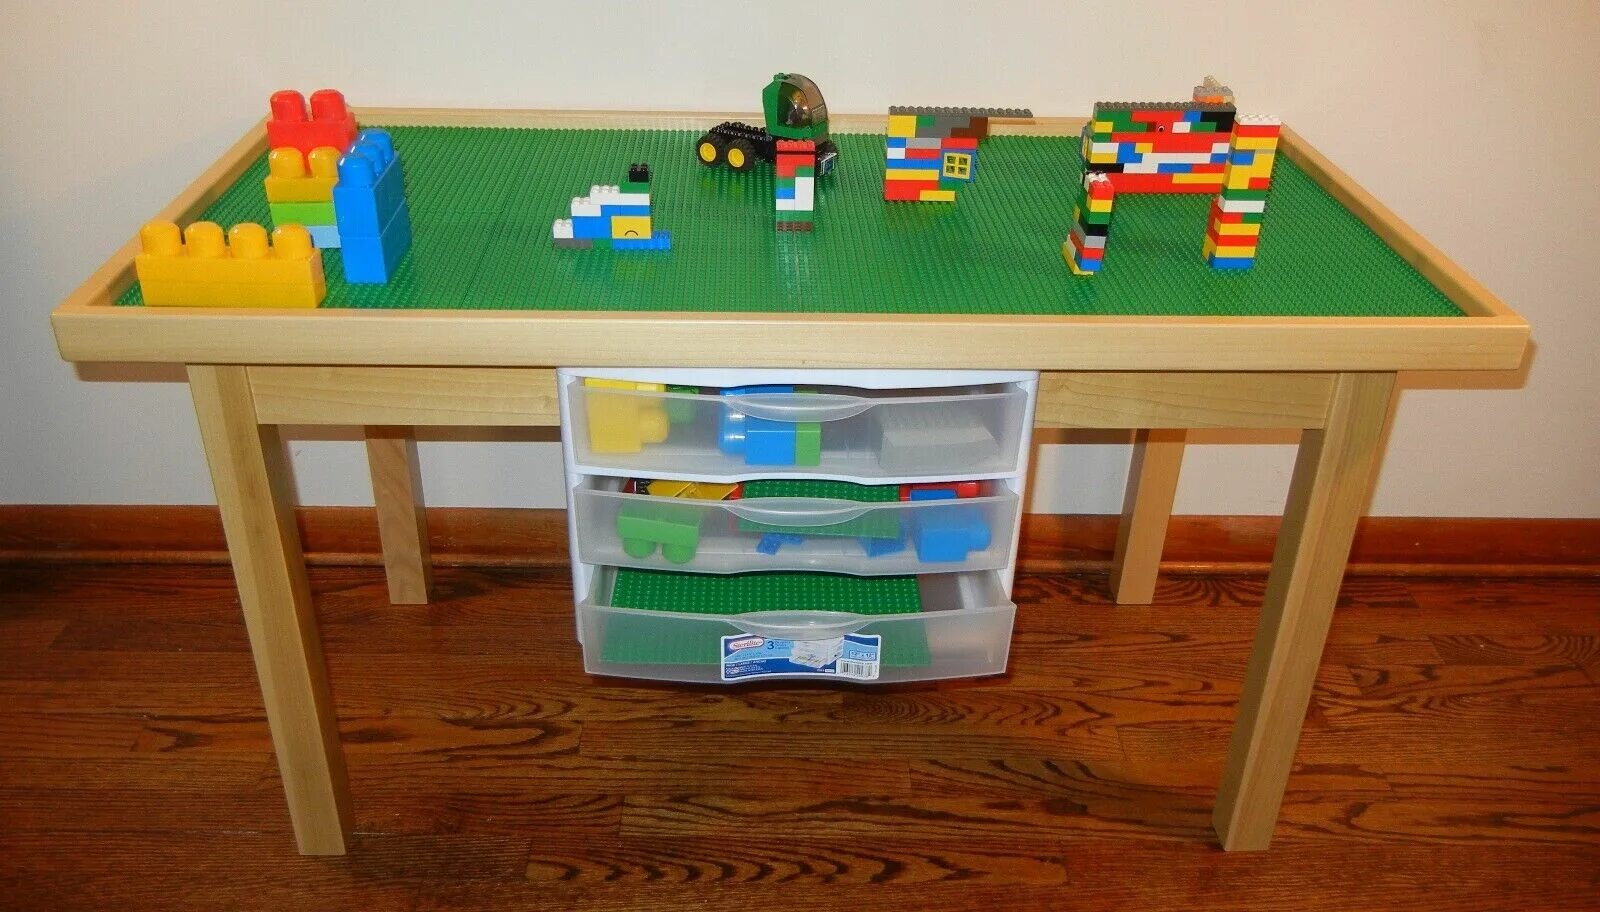 Стол конструктор. Стол для конструирования для детского сада. Играть со столом